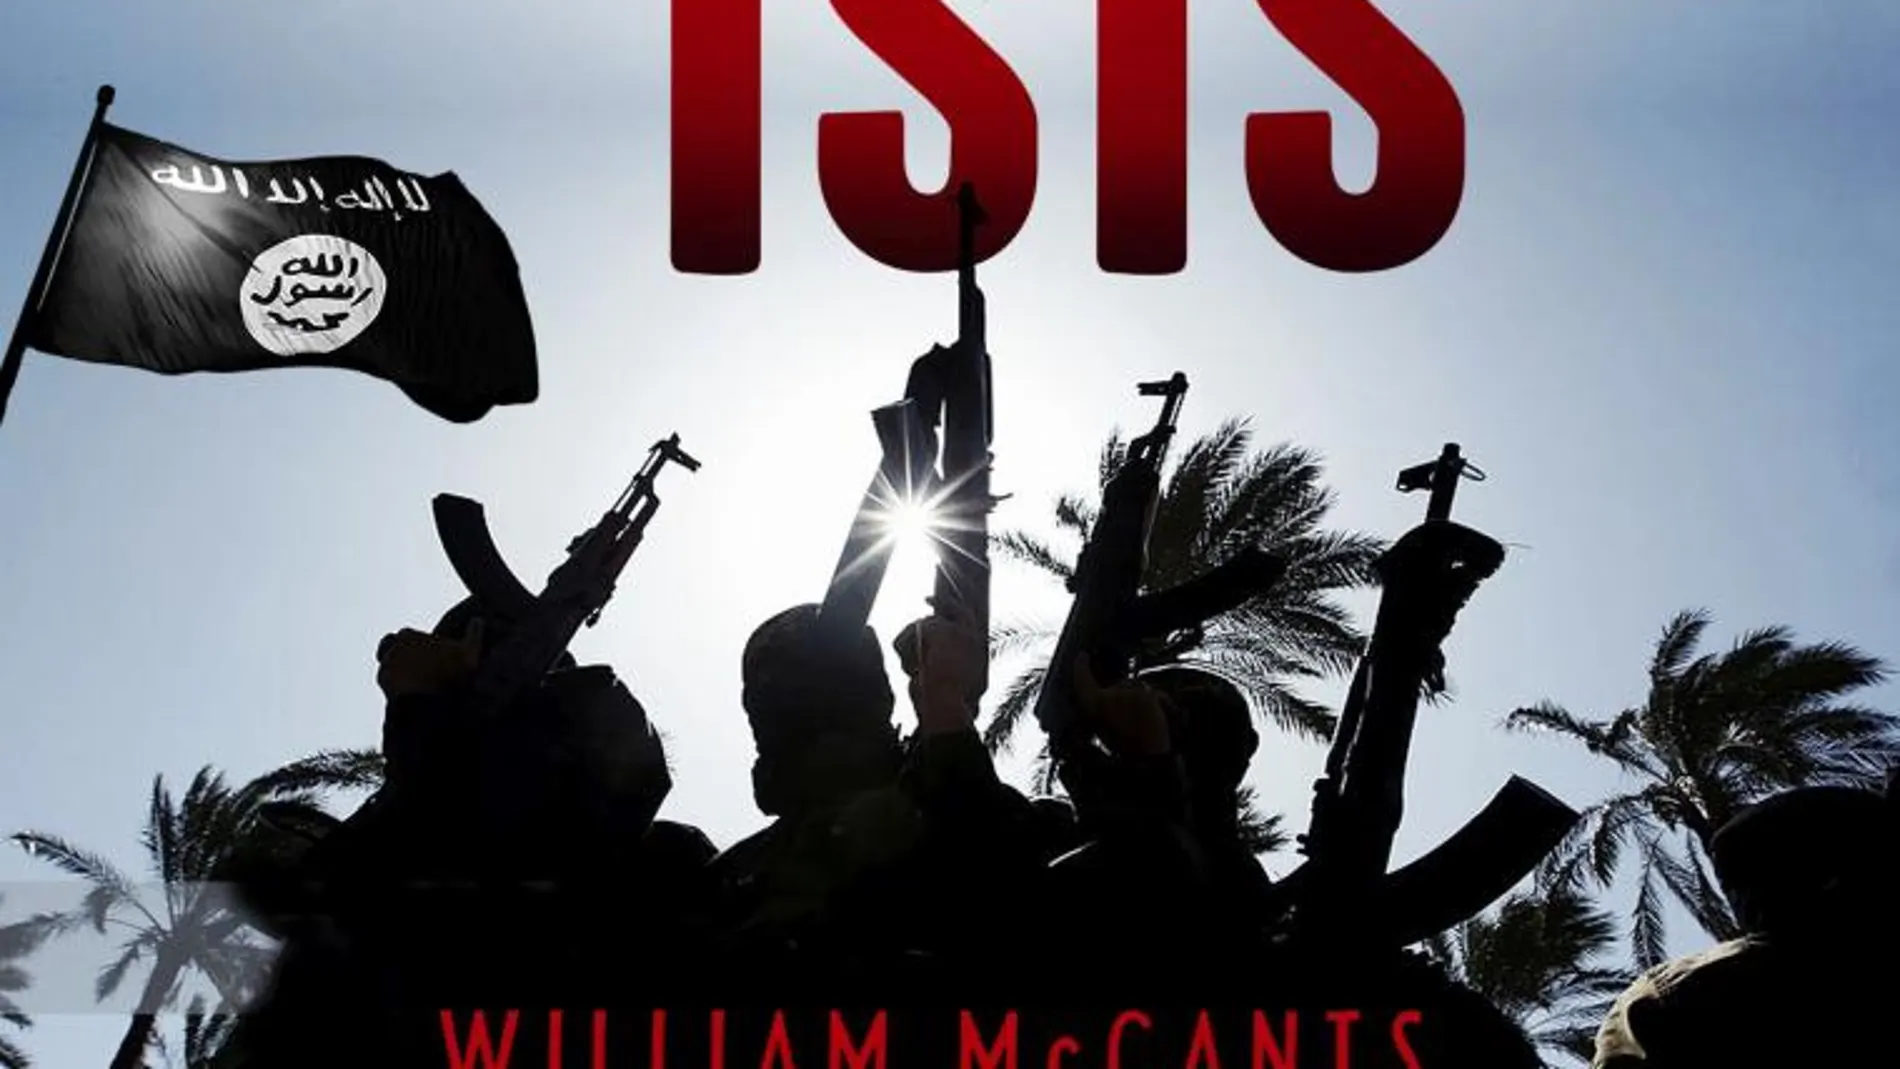 El ISIS nunca dejará de matar porque así está escrito